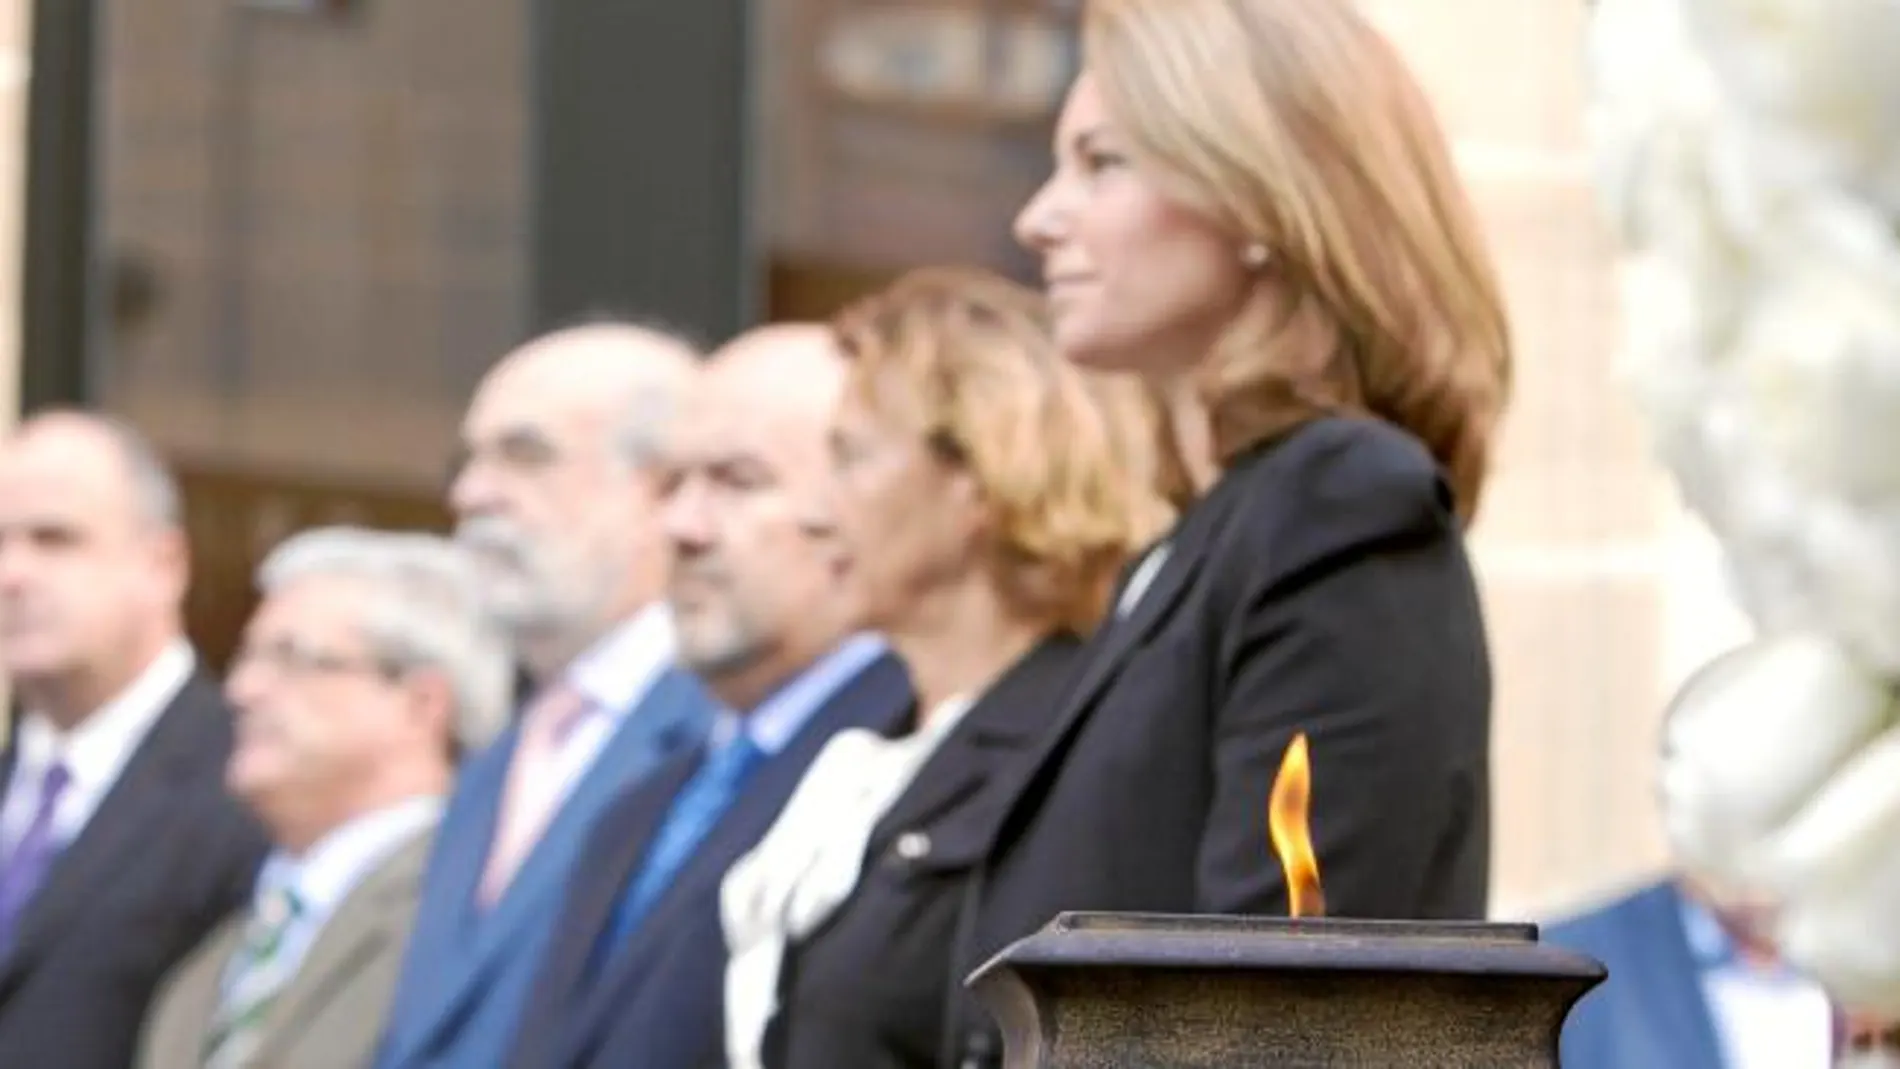 La presidenta del Parlamento vasco, Arantza Quiroga, dio inicio ayer al acto de conmemoración de las víctimas encendiendo un pebetero ubicado junto a la escultura donde estaba colocada con antelación la corona de flores, con una banda en la que se podía l